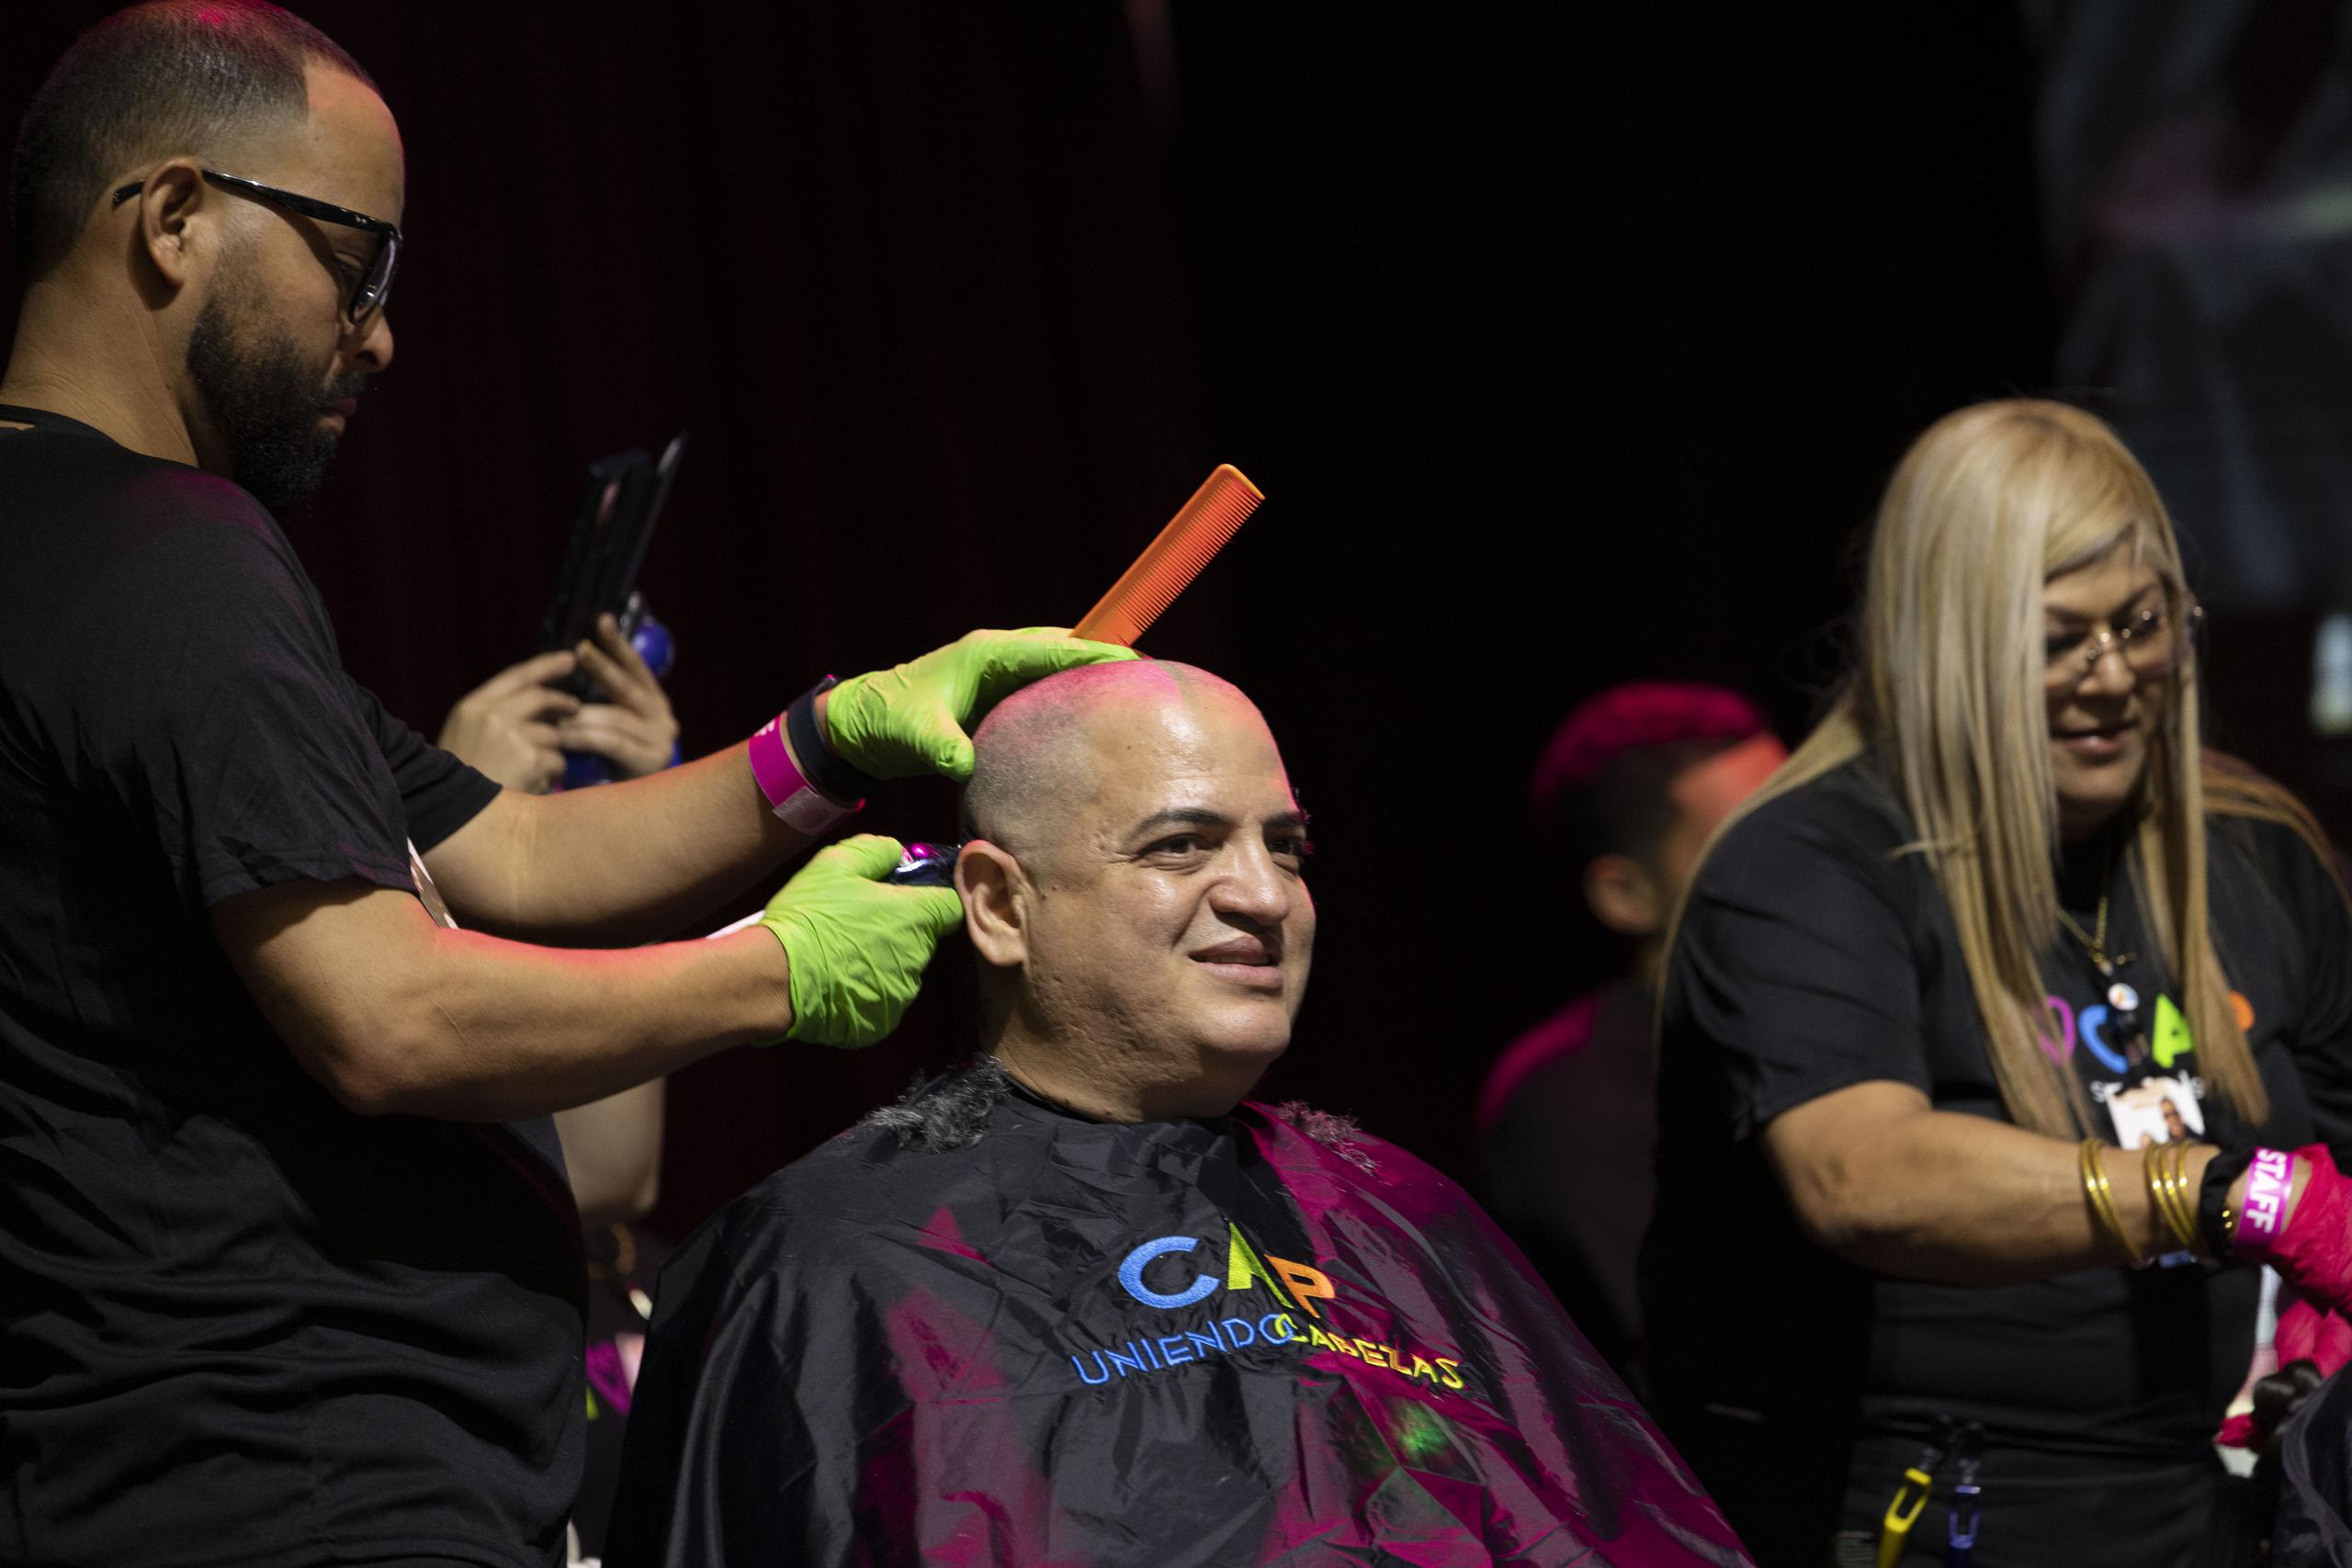 Cientos de personas se dieron cita para donar el pelo o rapárse la cabeza, aportando además un donativo para la fundación.